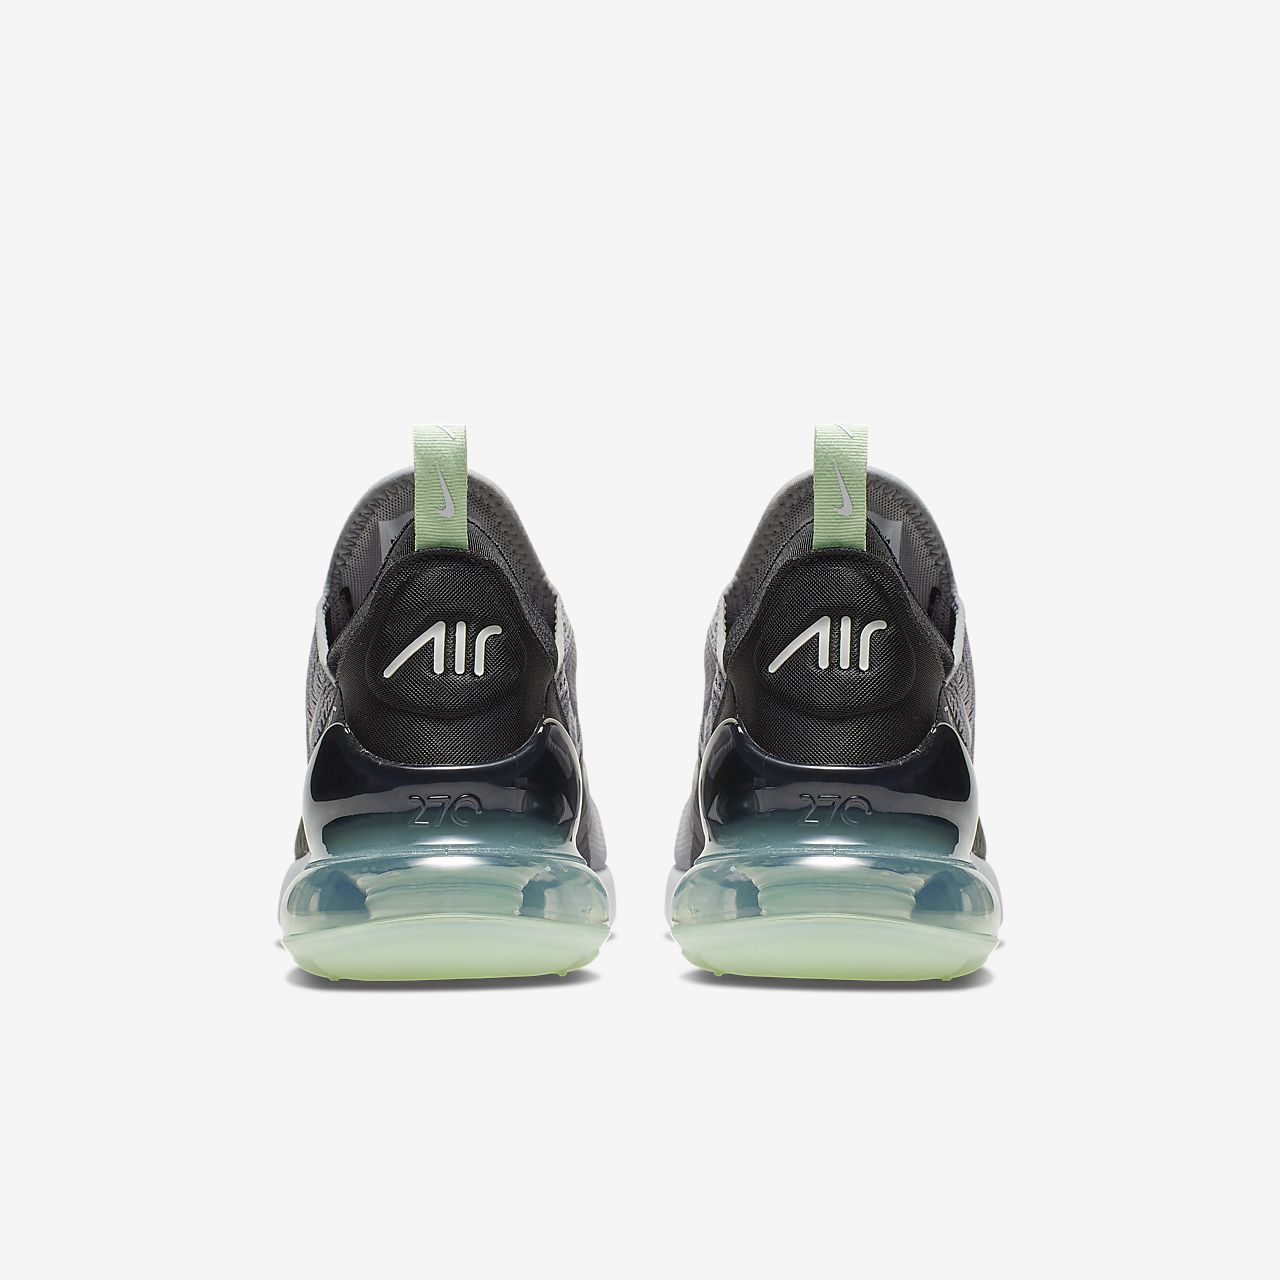 Nike Air Max 270 - Sneakers - Grå/Mintgrønne/Sort/Hvide | DK-26051